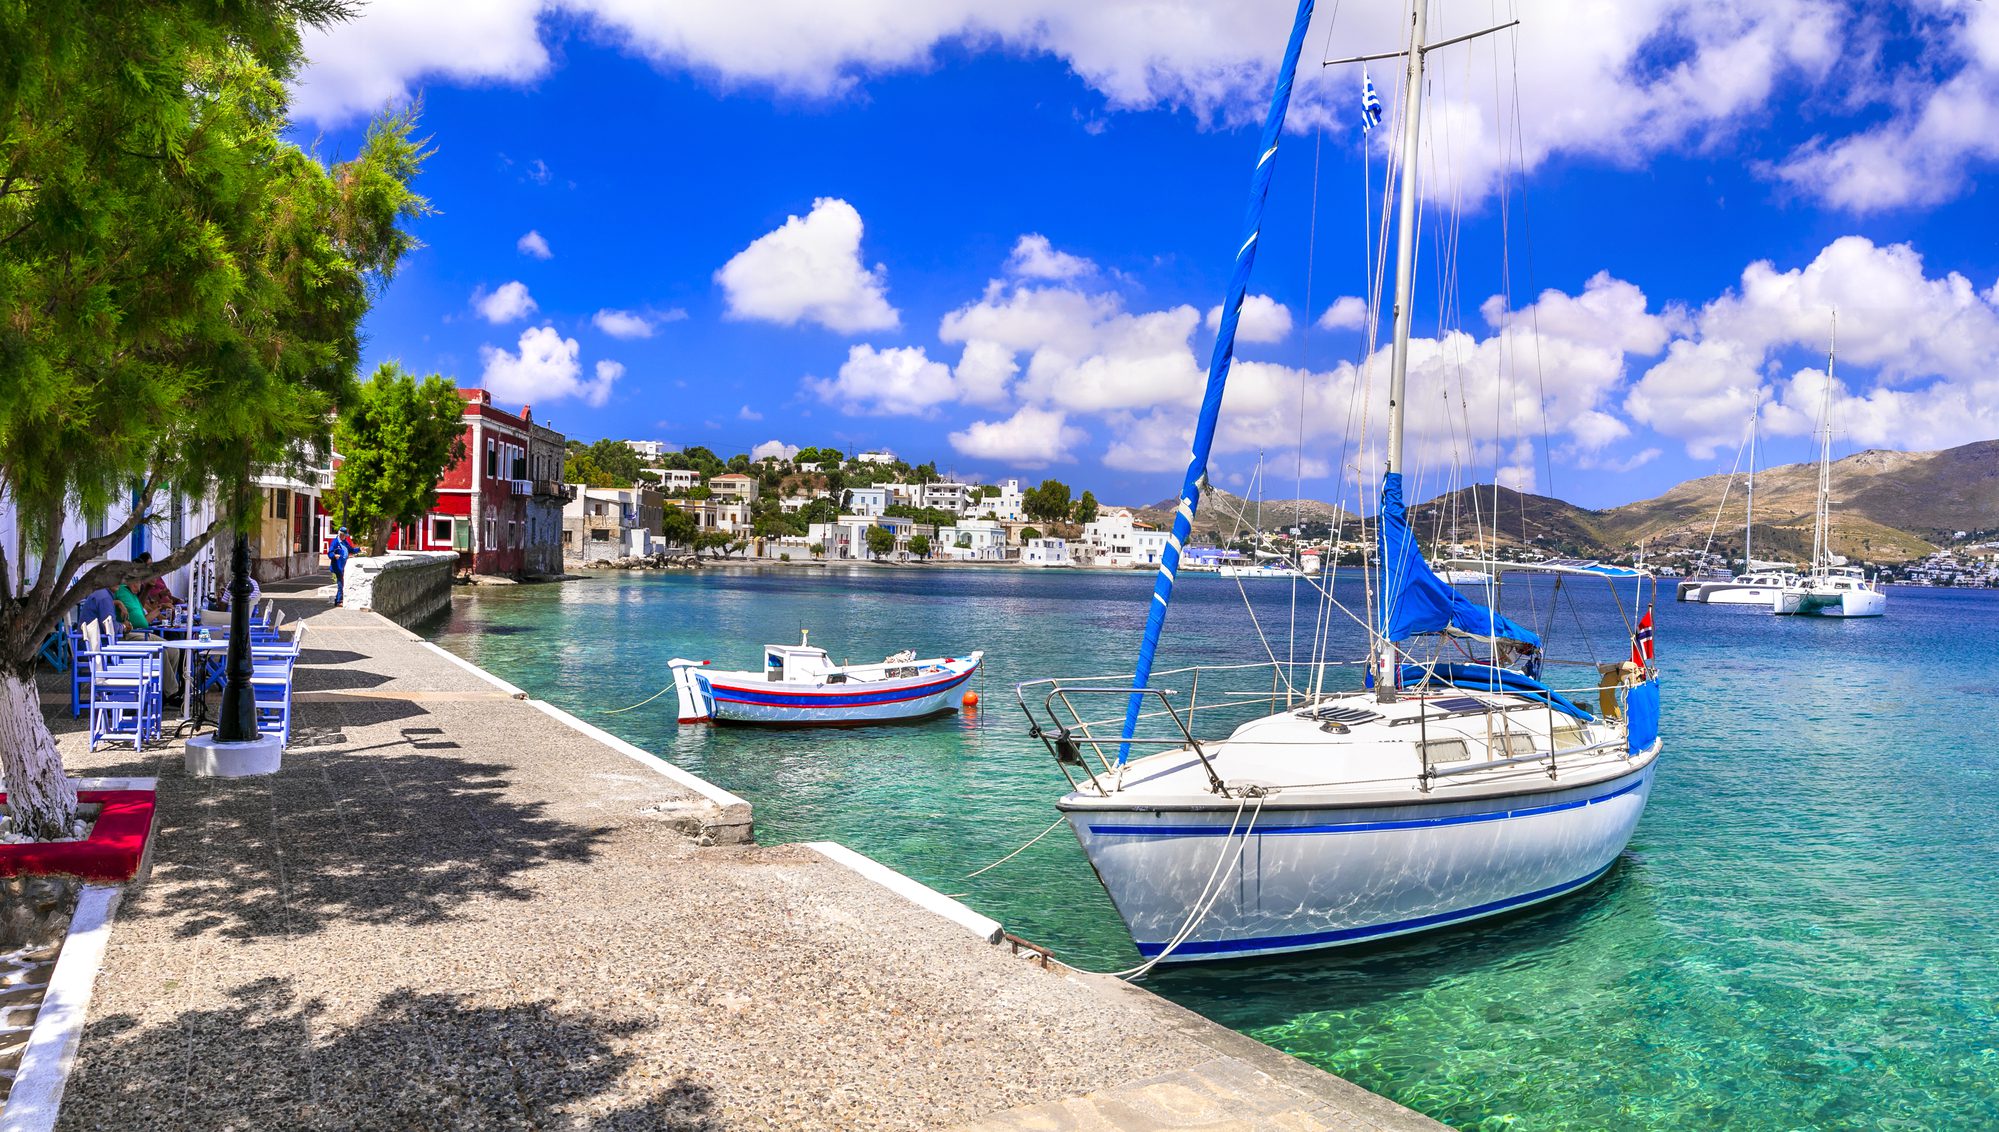 Ψηφοφορία: Ποιο είναι το αγαπημένο σας νησί στα Δωδεκάνησα;